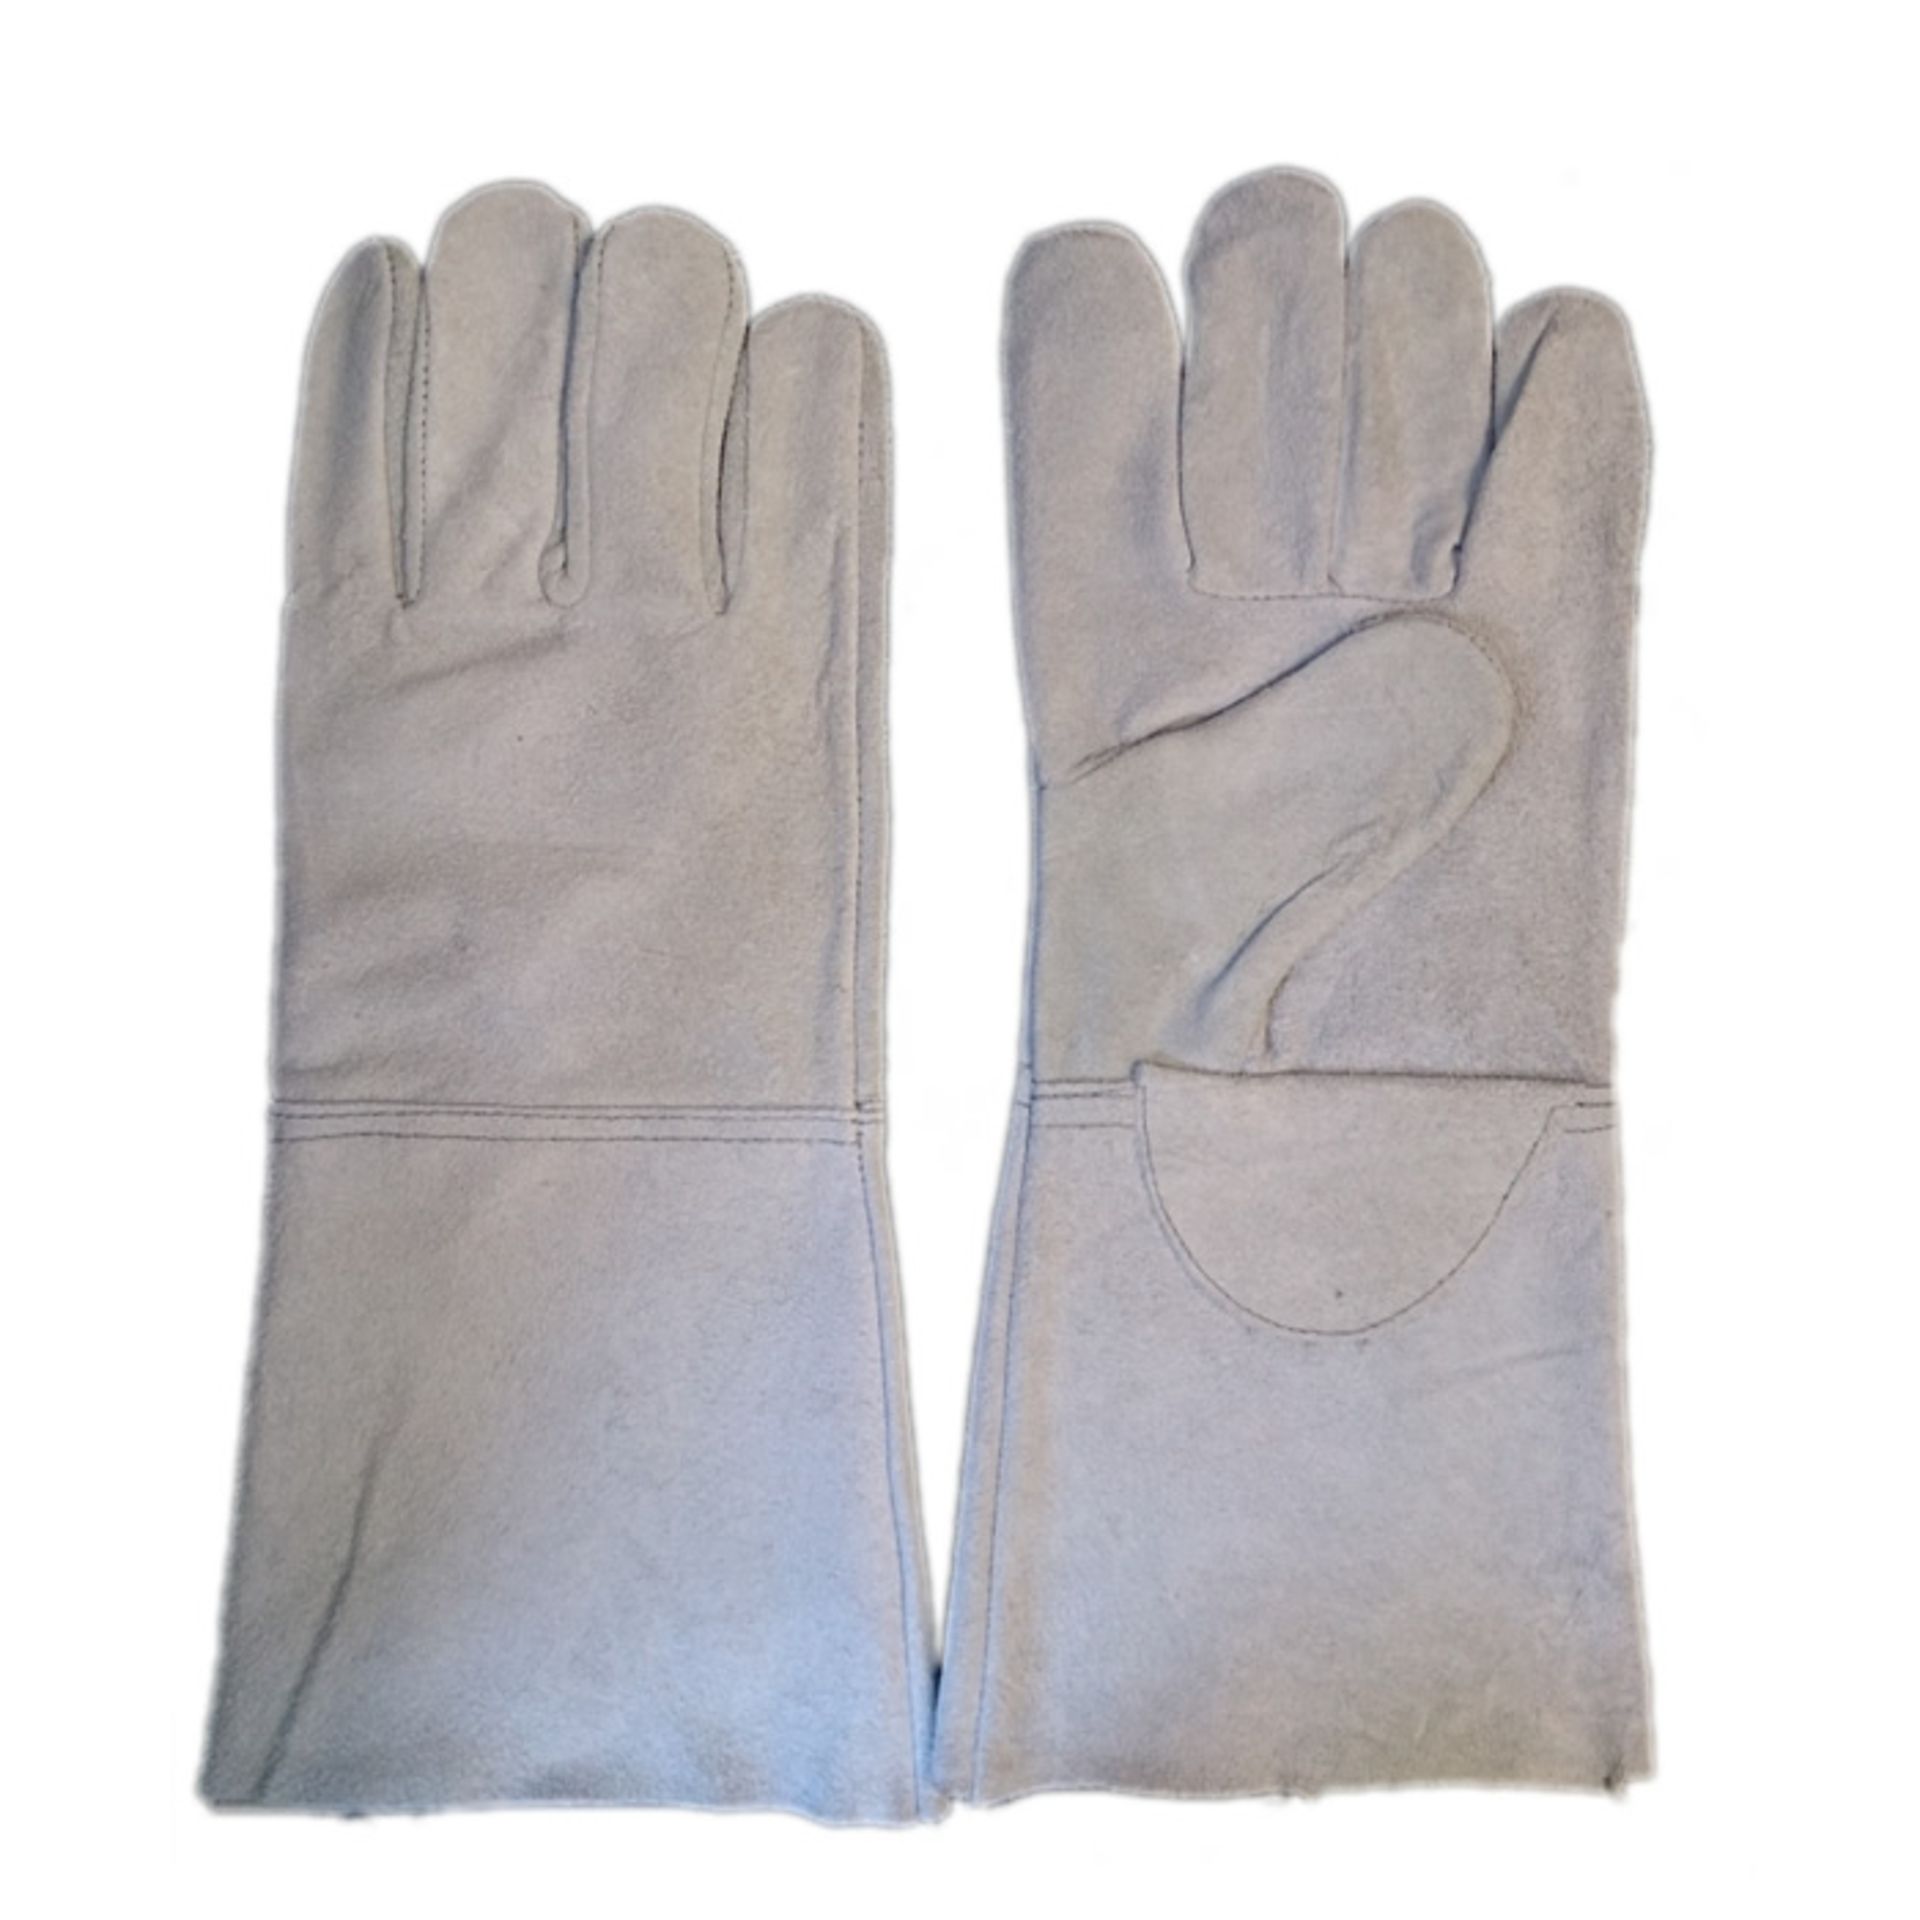 10 X Pairs Welding Gloves